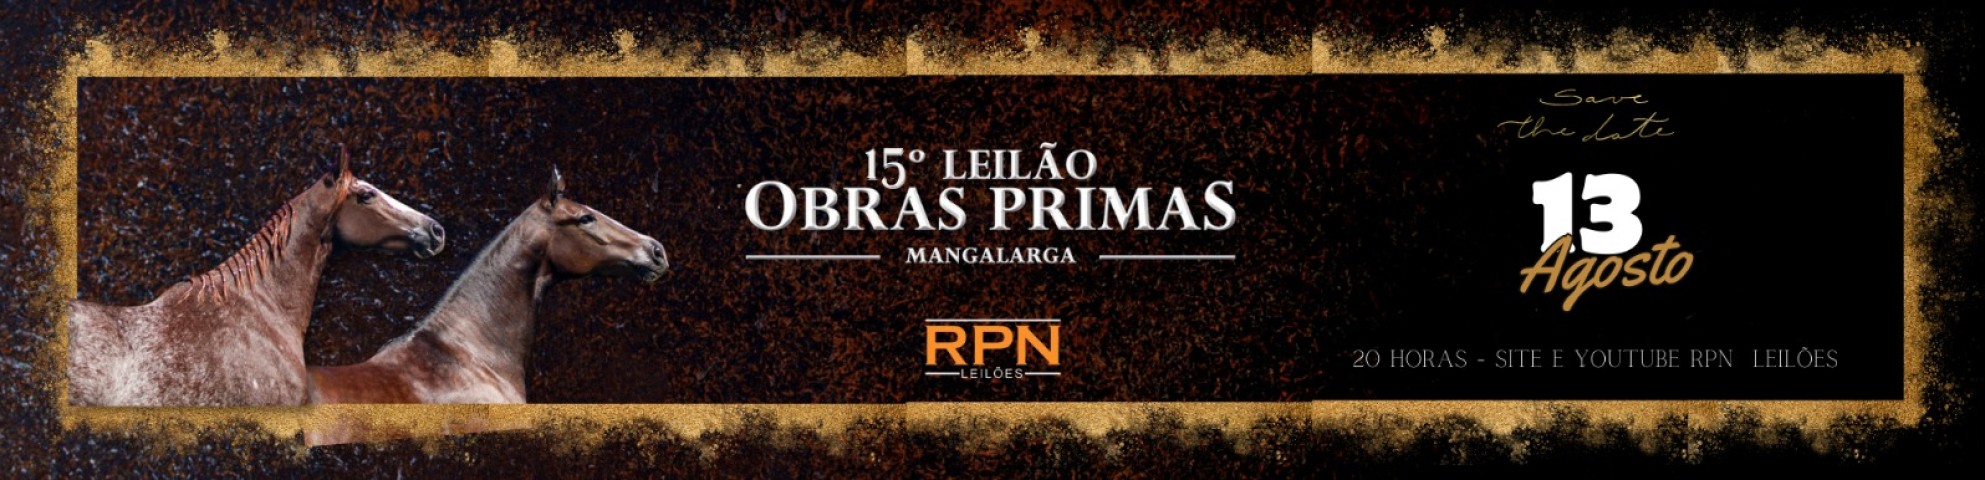 Slide 15° LEILÃO OBRAS PRIMAS MANGALARGA (LEILÃO VIRTUAL)